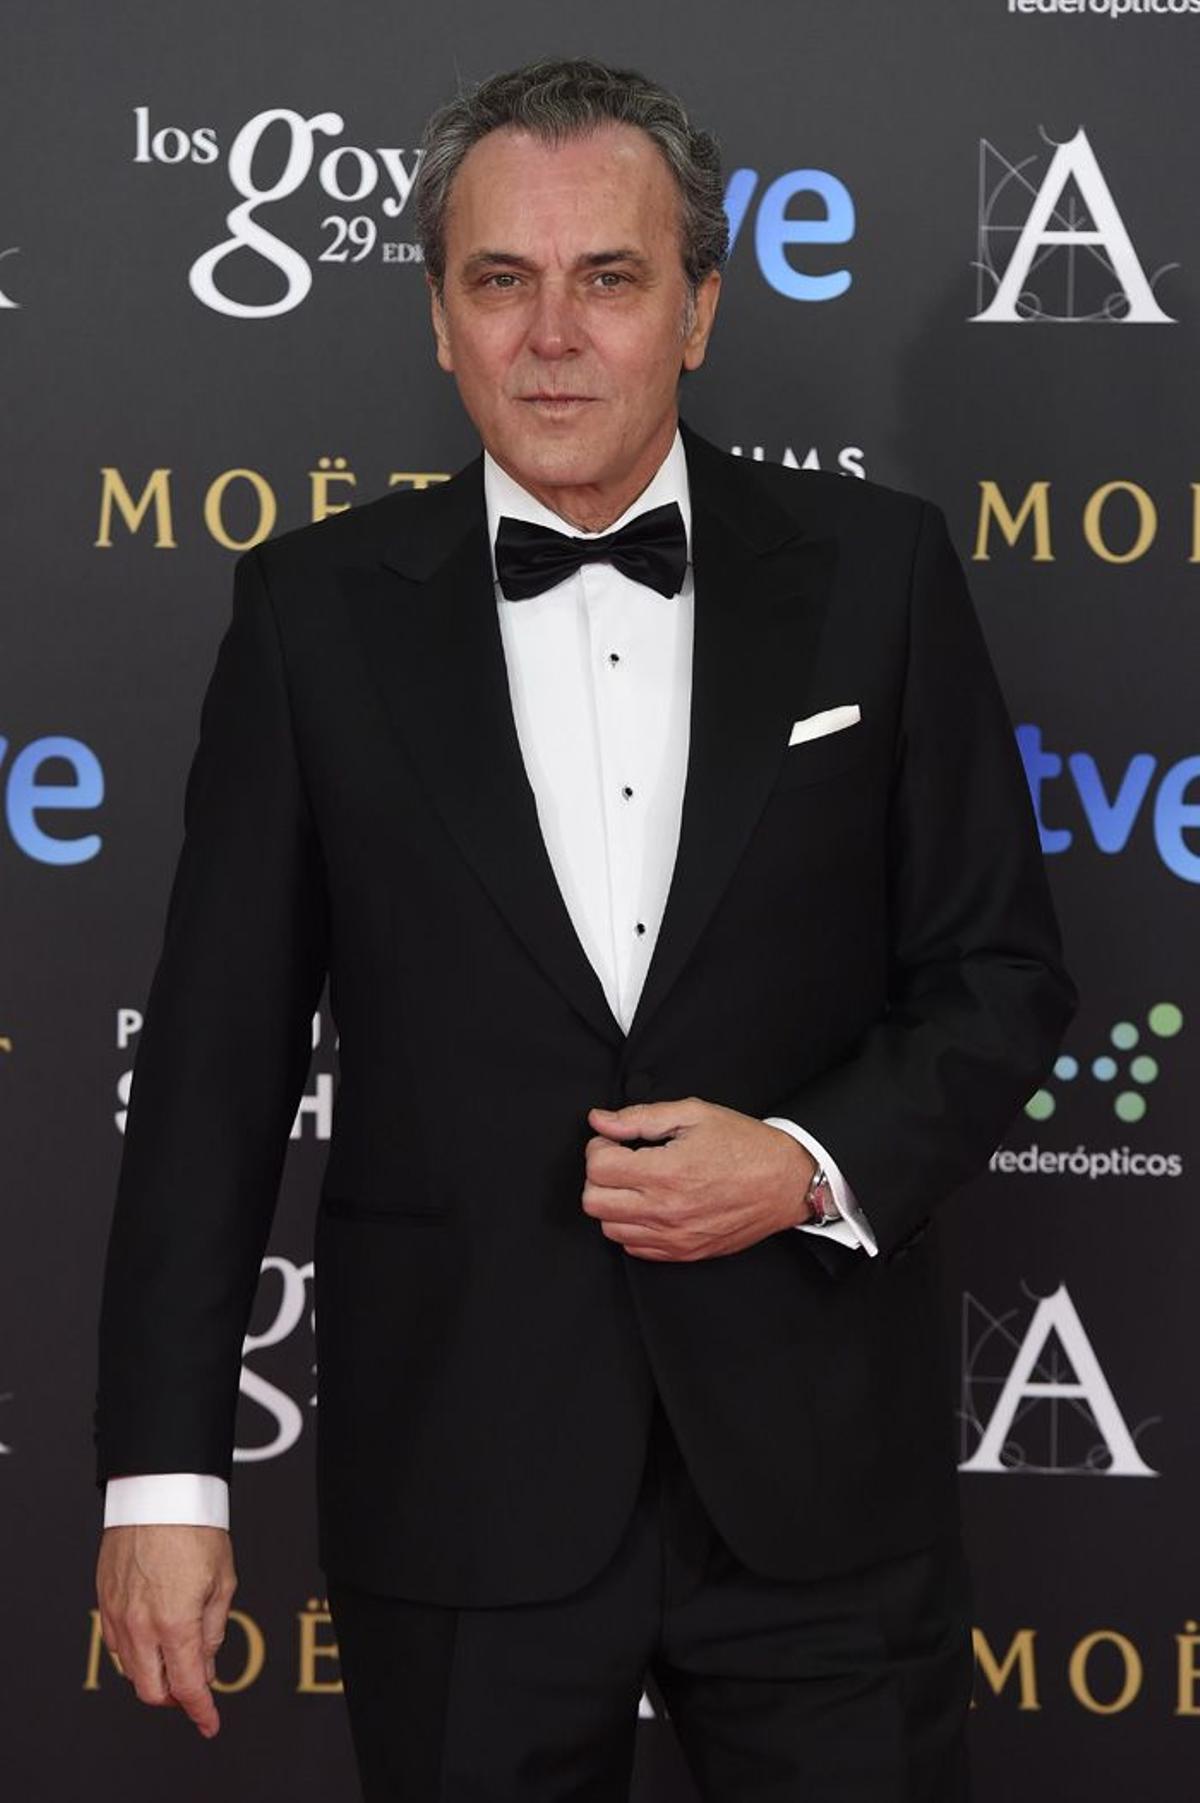 Premios Goya 2015, José Coronado